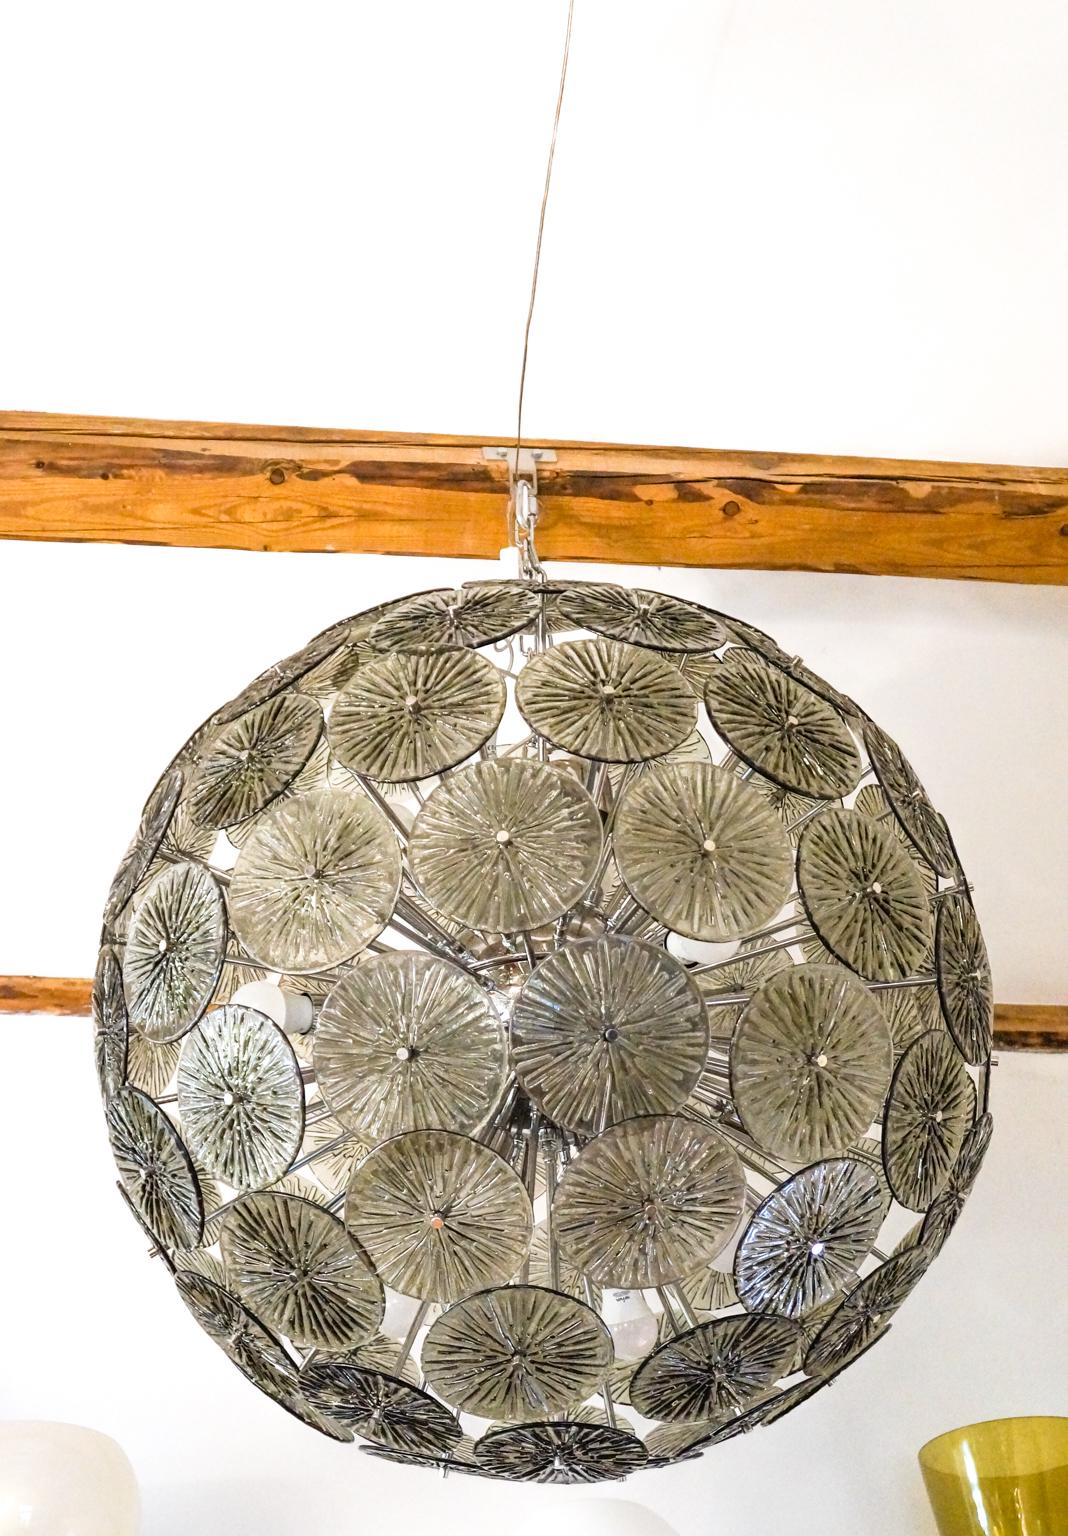 Fantastischer Sputnik-Kronleuchter aus mundgeblasenem Muranoglas mit 95 Elementen, taupe-graue Farbe. Der Kronleuchter kann je nach Bestimmungsland überholt werden. Inklusive Ersatz. E27 / E26 Glühbirnen
Dieser Kronleuchter ist ein Projekt des